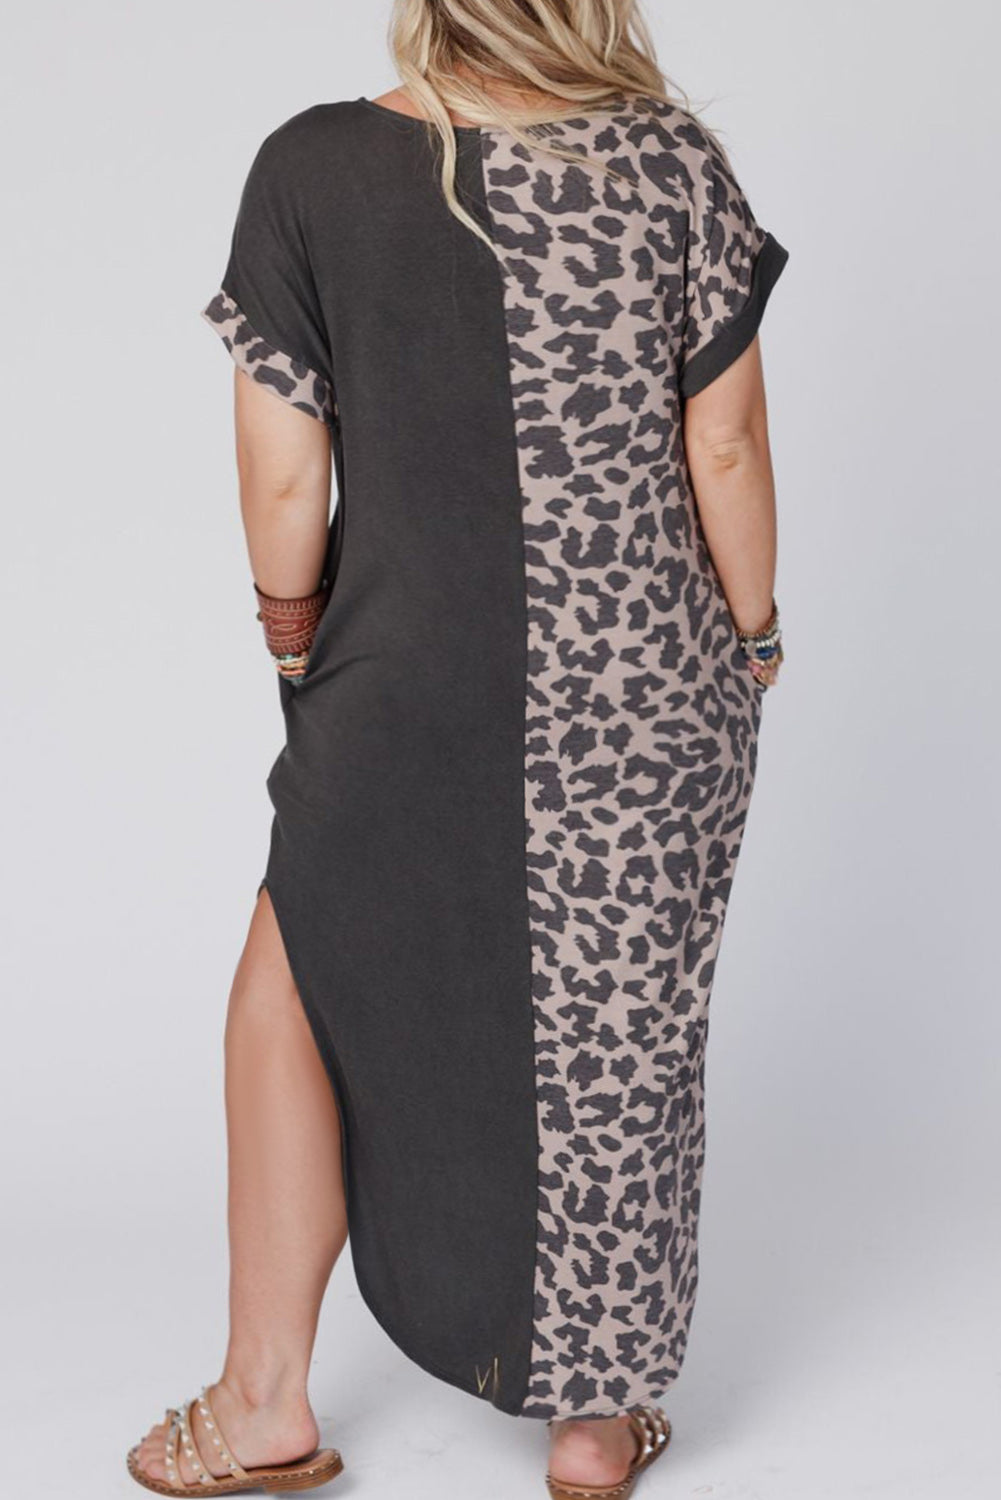 Multicolor Leopard Contrast Short Sleeve Plus Size T-shirt Dress Plus Size Dresses JT's Designer Fashion